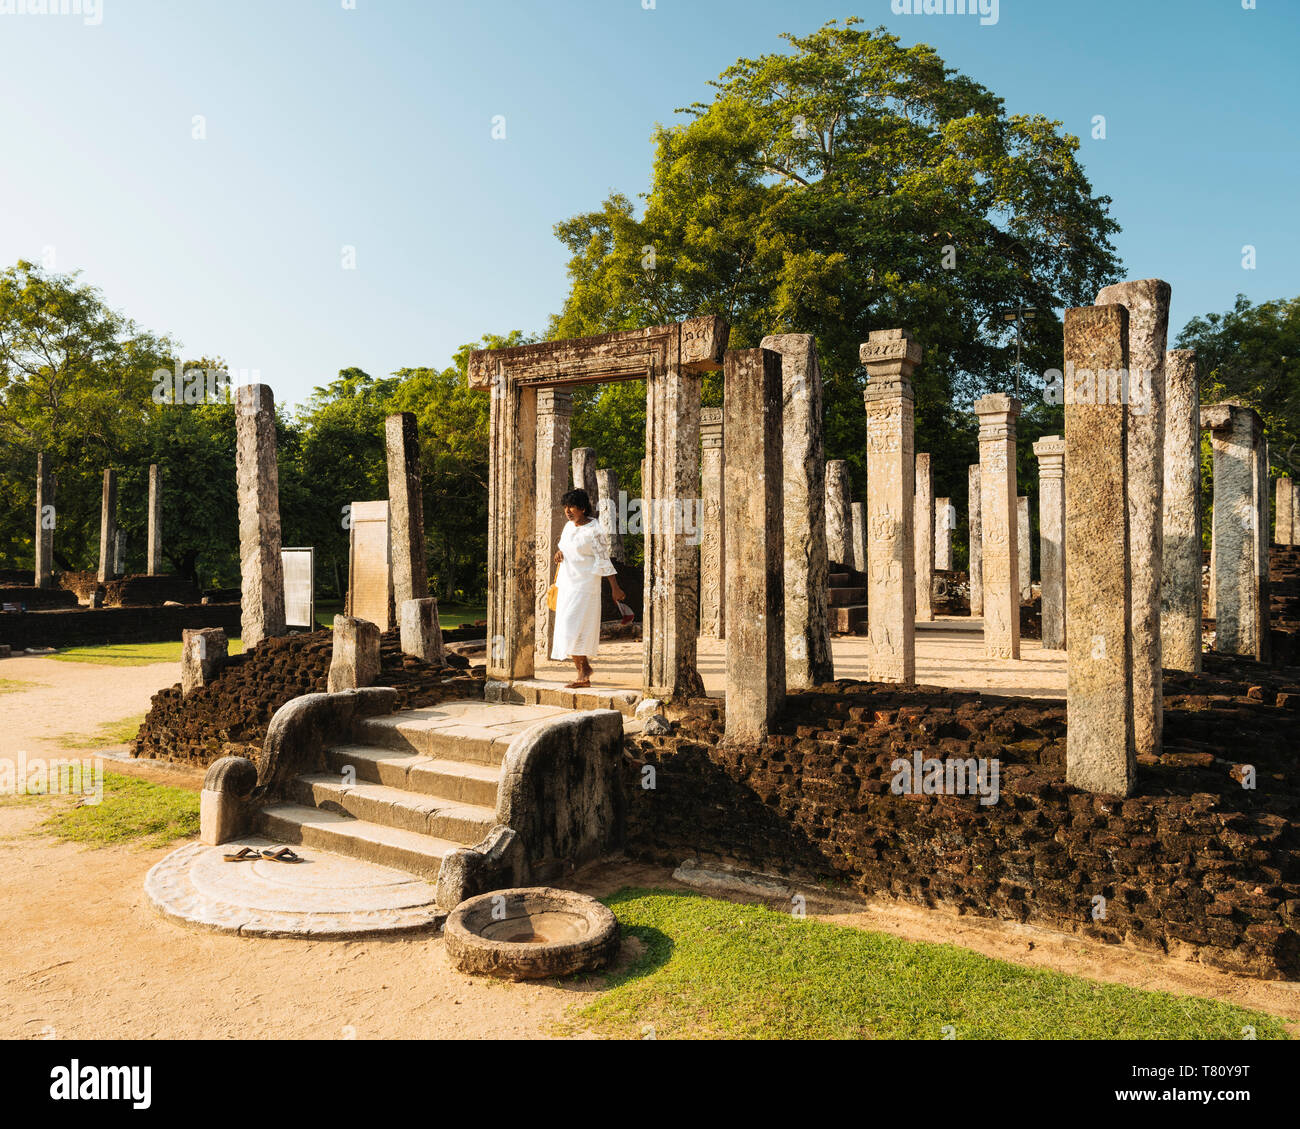 Casa acostadas, Polonnaruwa, Sitio del Patrimonio Mundial de la UNESCO, la Provincia Central del Norte, Sri Lanka, Asia Foto de stock